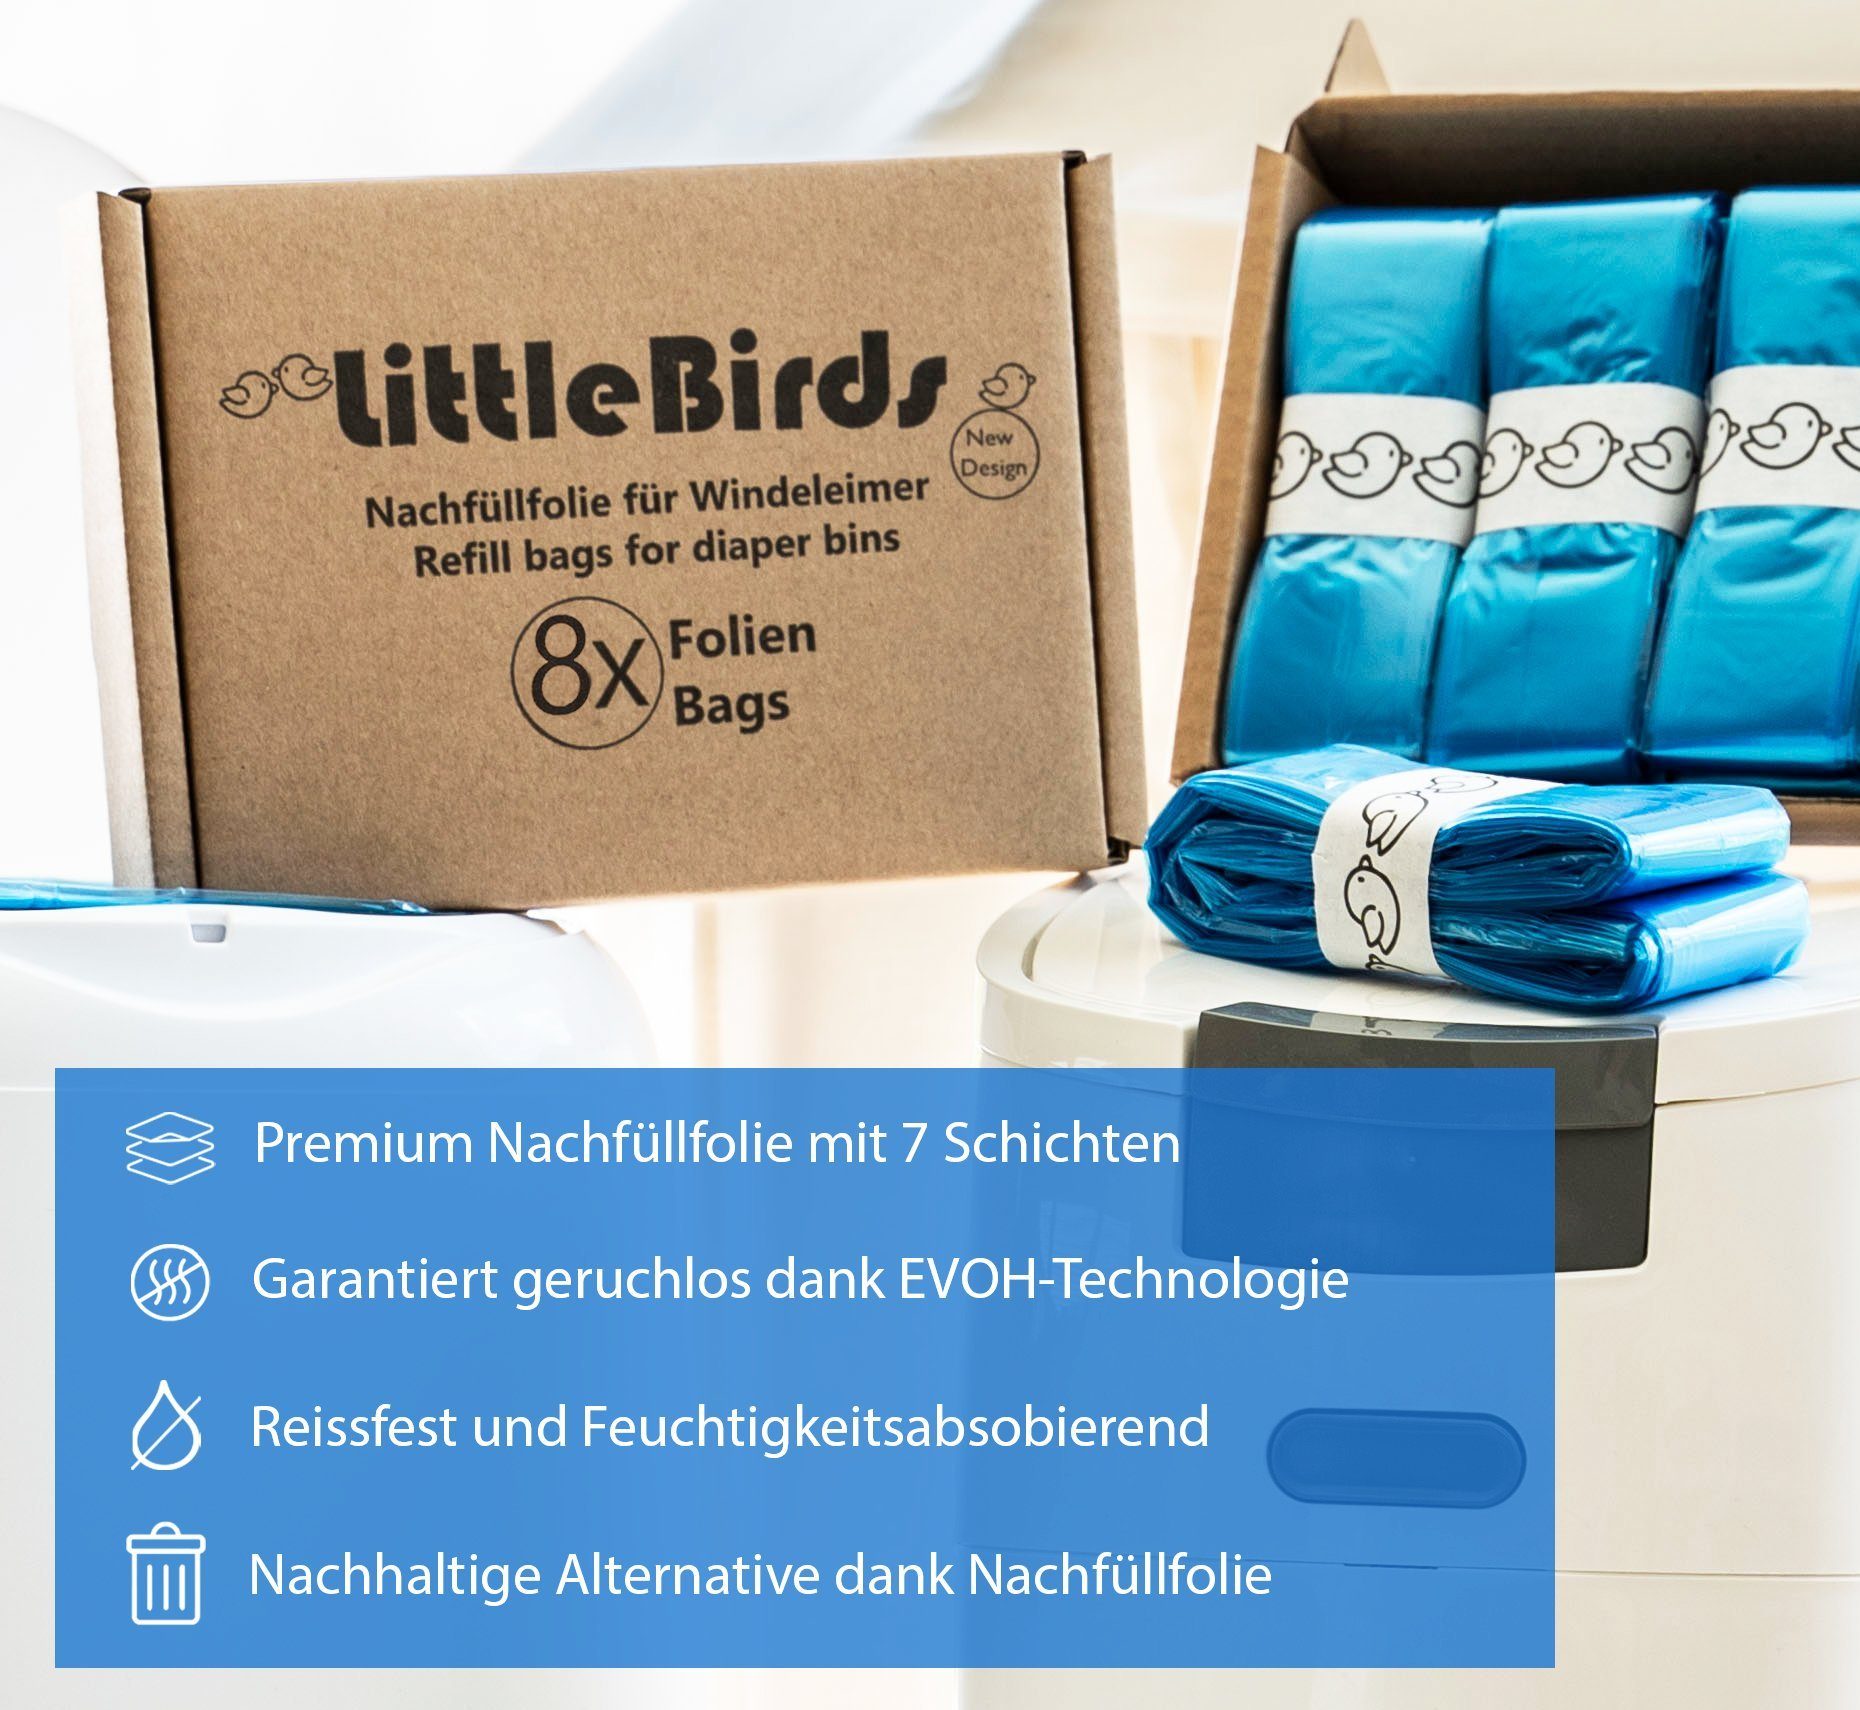 Windeleimer Angelcare Premium kompatibel Little Windeleimer & Birds Spross mit Nachfüllfolien